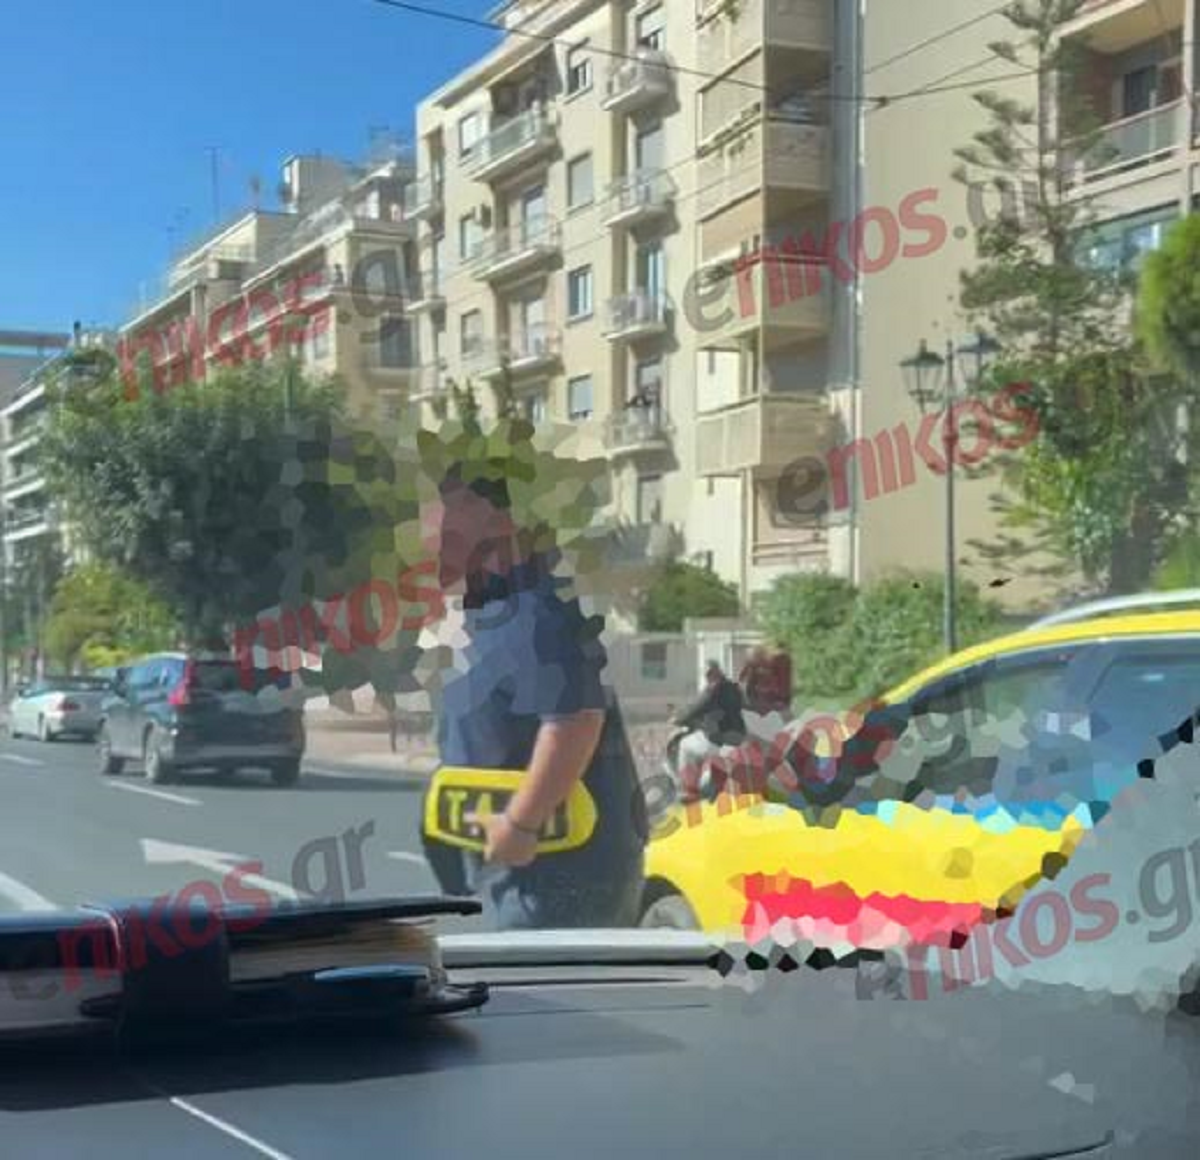 Χειρόφρενο στα ταξί και πορεία στην Αθήνα - Η αντίδραση αυτοκινητιστή όταν εντόπισε απεργοσπάστη